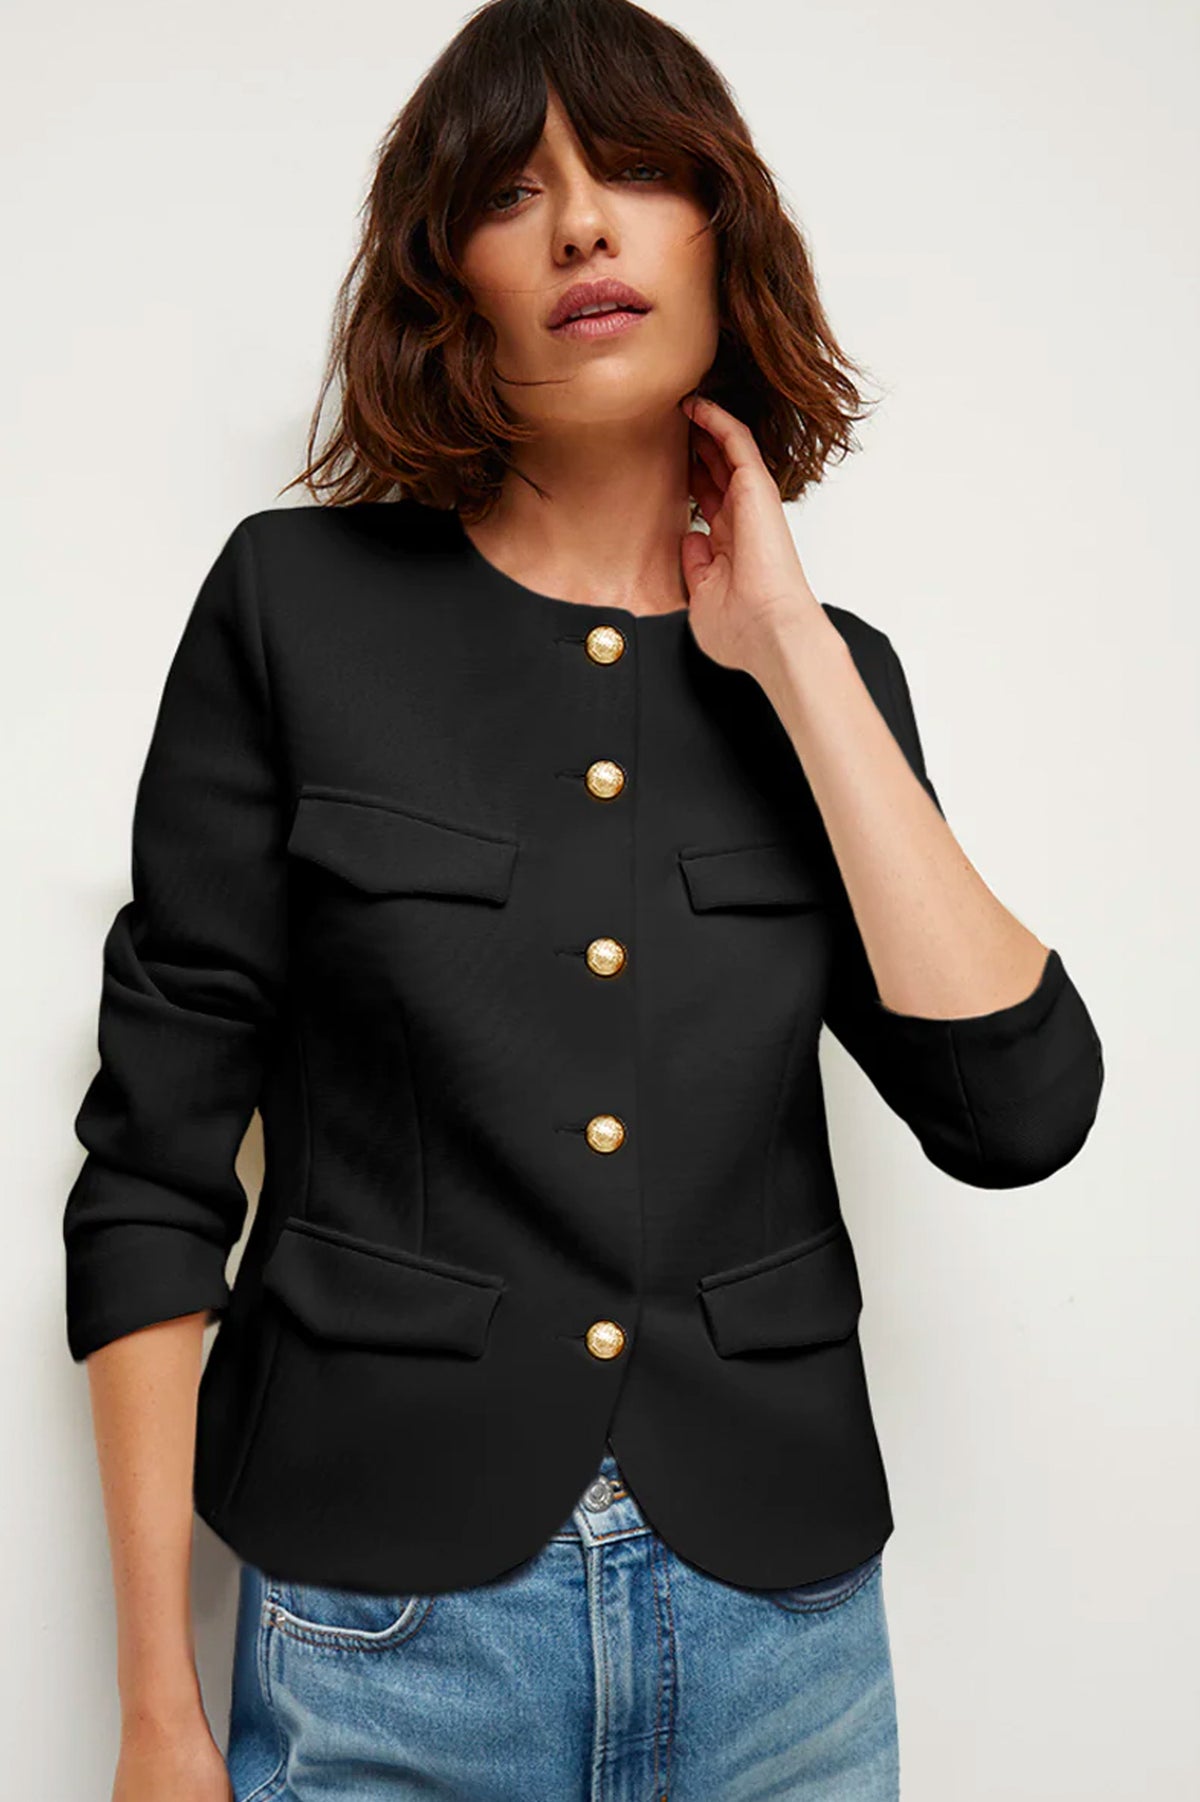 Kensington Knit Jacket in Black